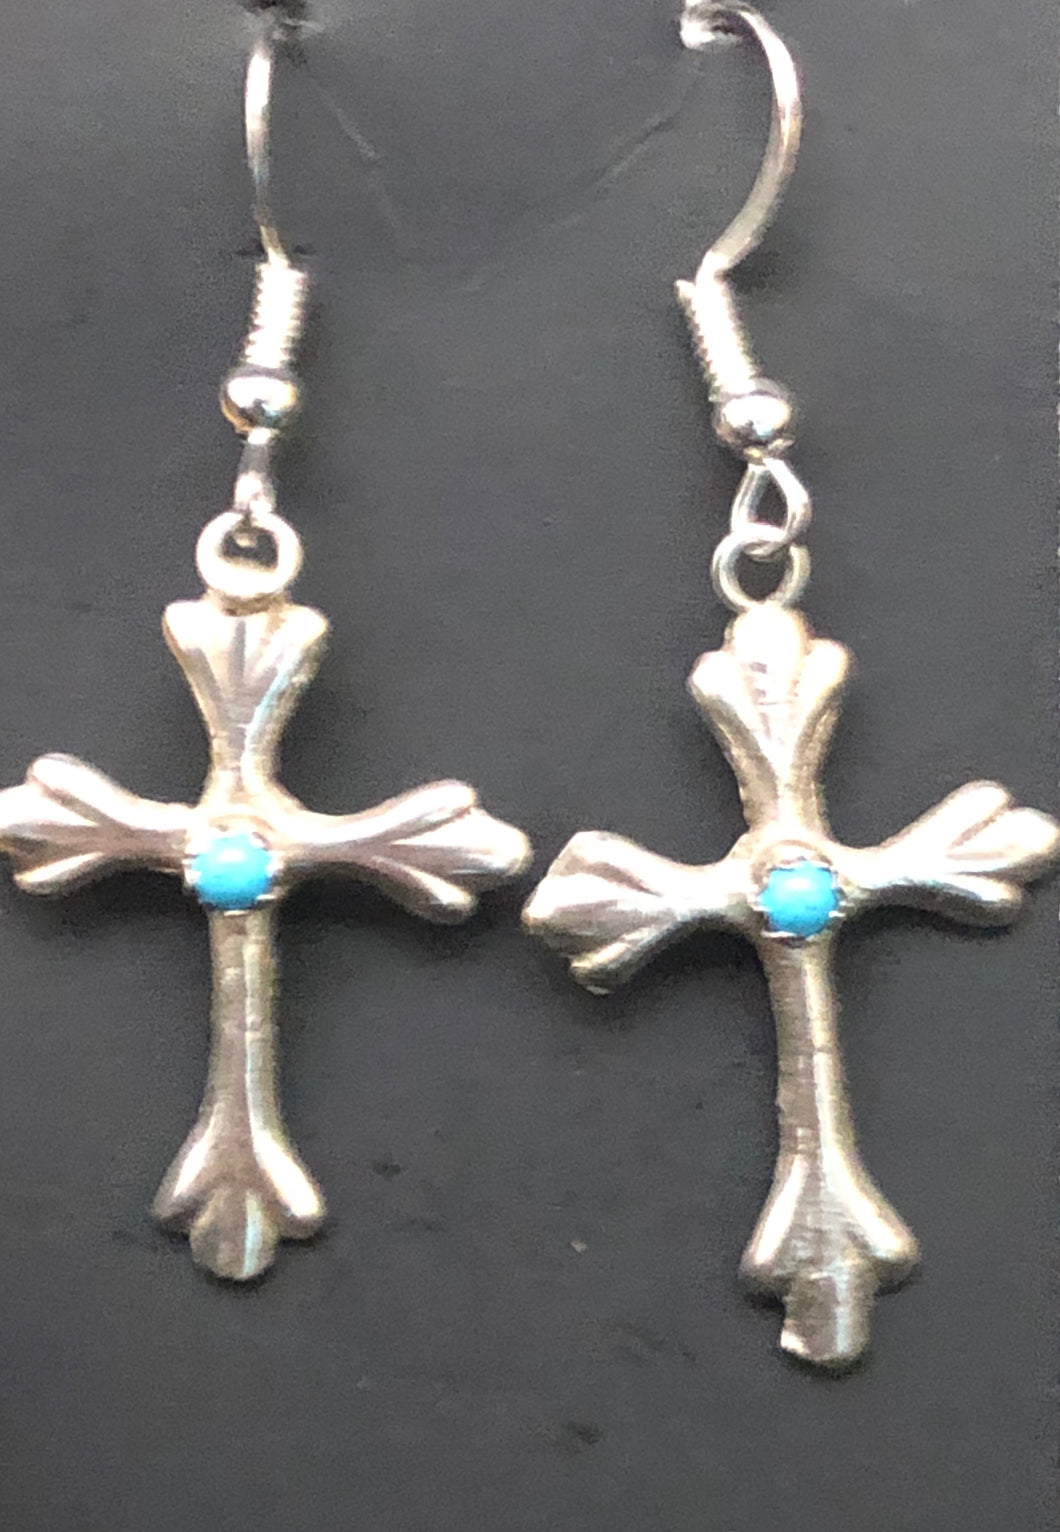 Turquoise set in sterling silver cross earrings